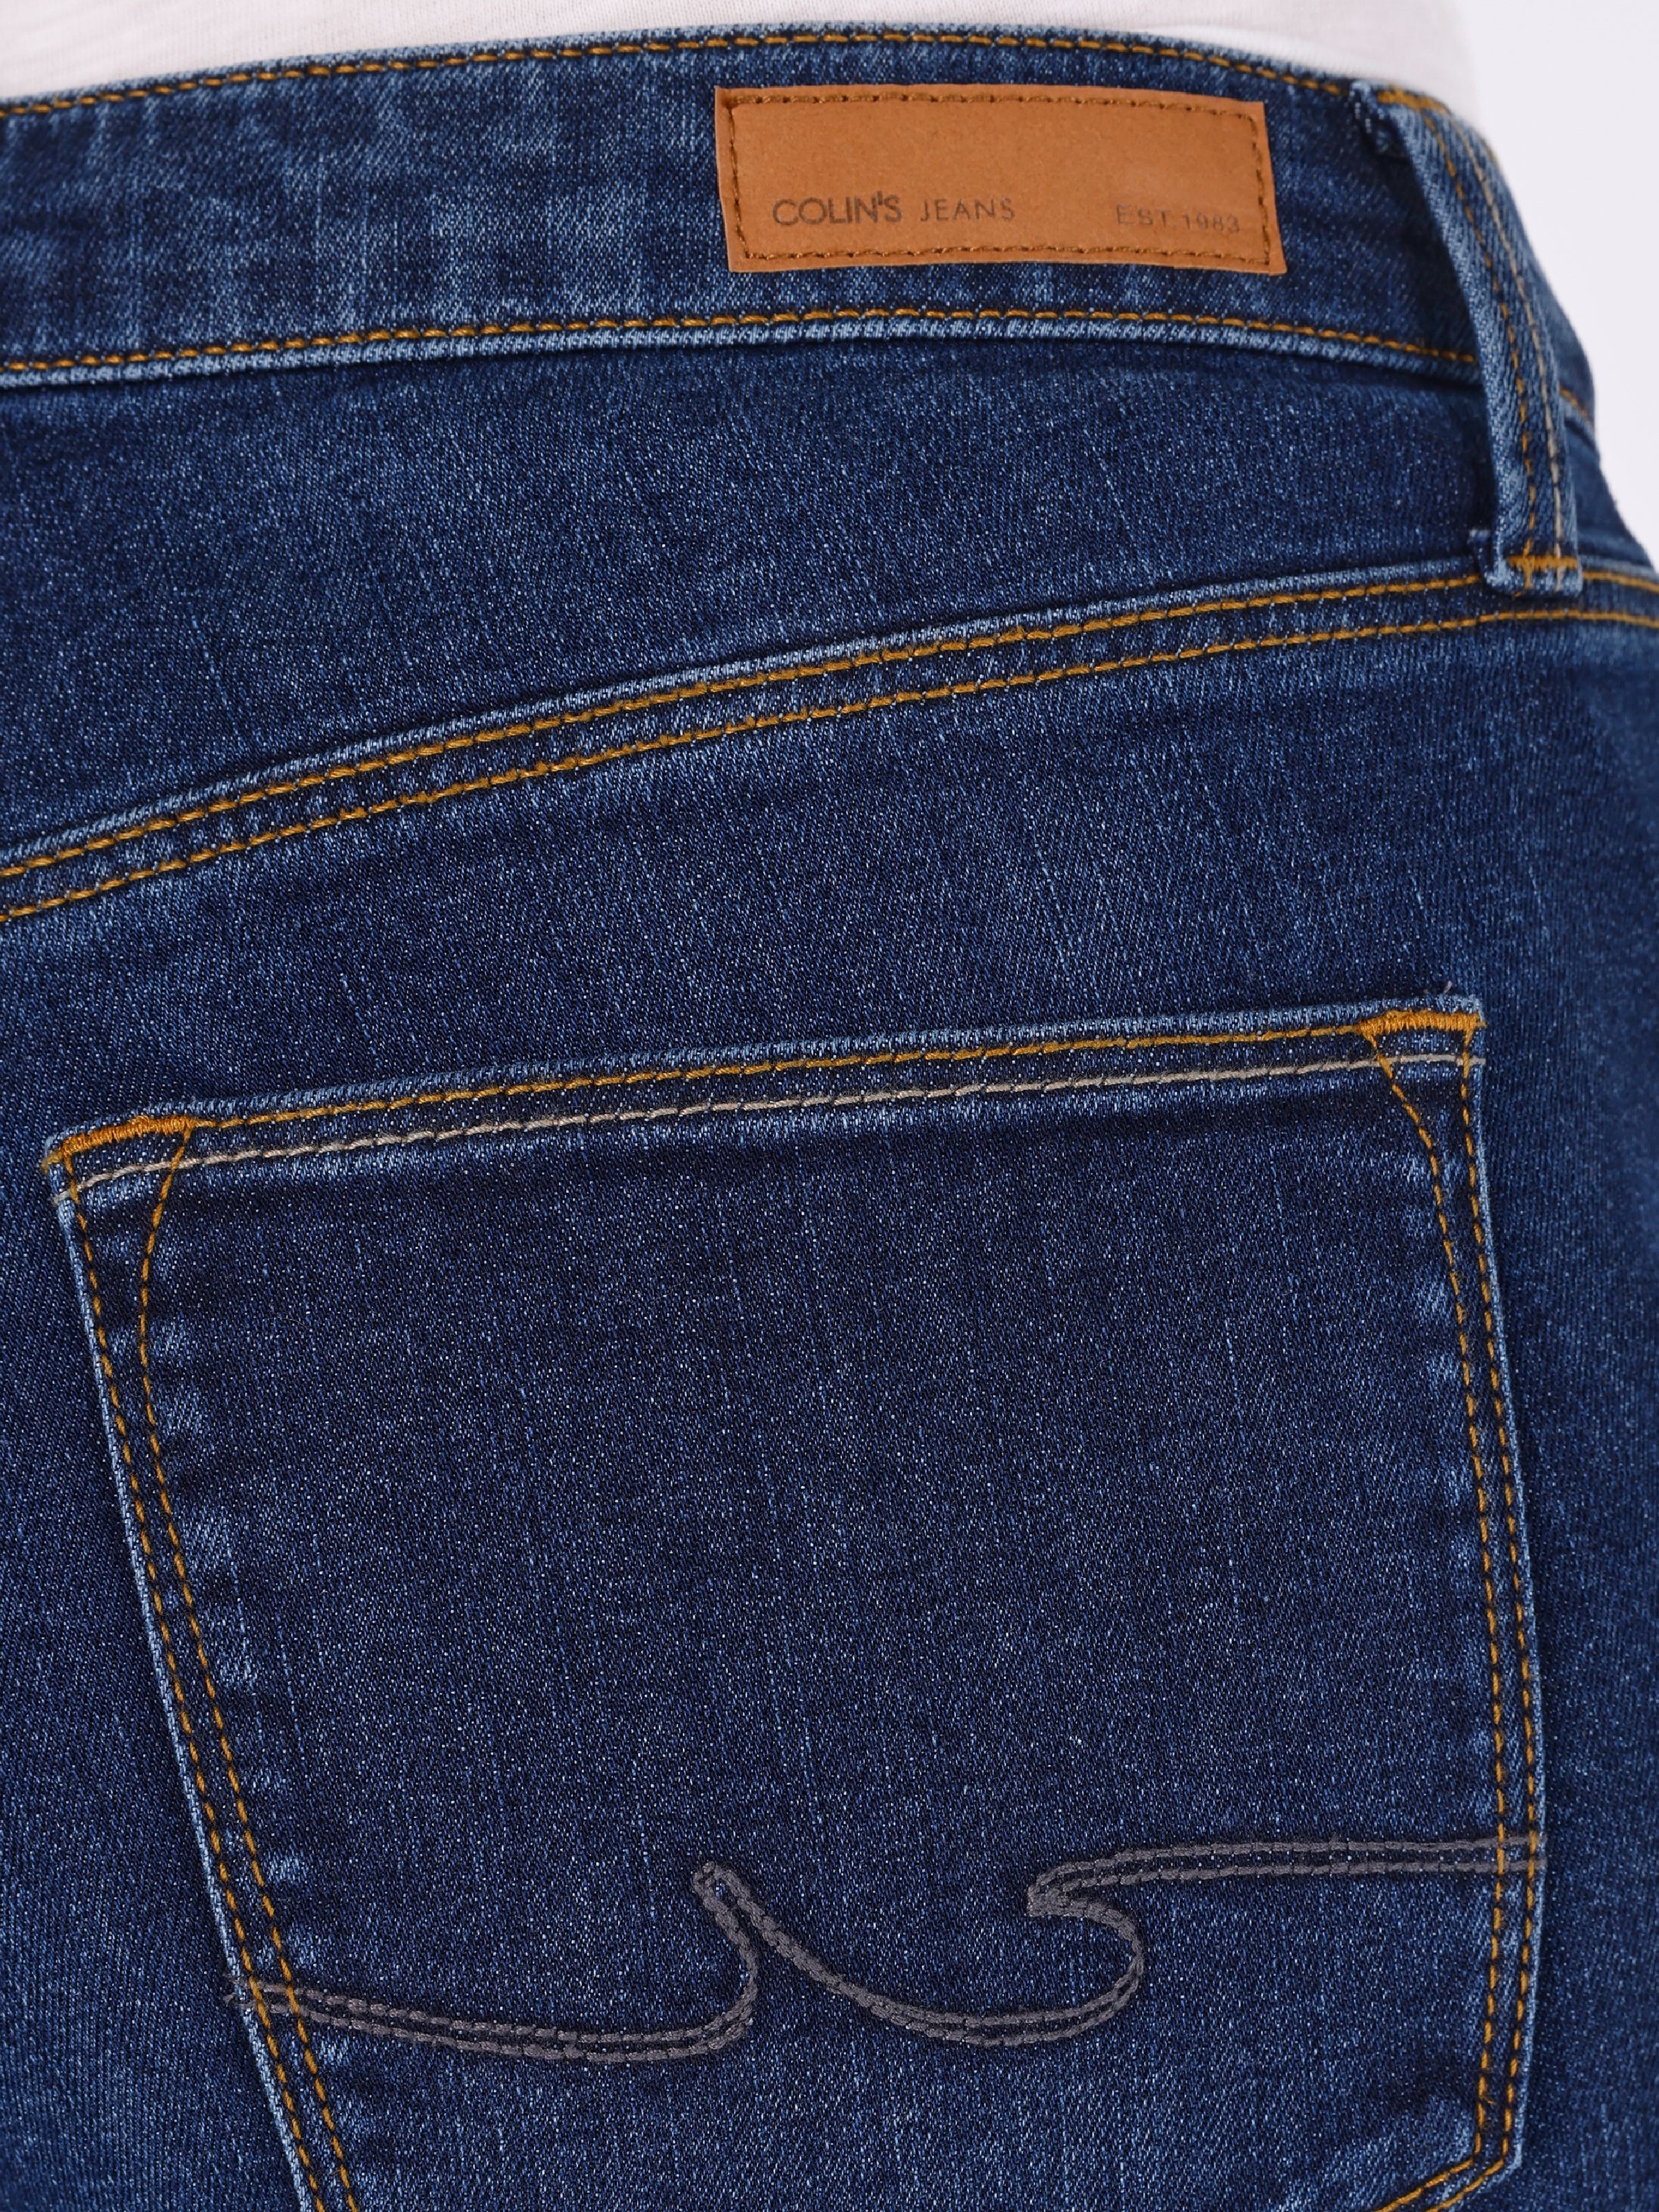 Afficher les détails de 792 Mıla Taille Moyenne Jambe Droite Coupe Régulière Bleu Foncé Pantalon En Jean Pour Femme